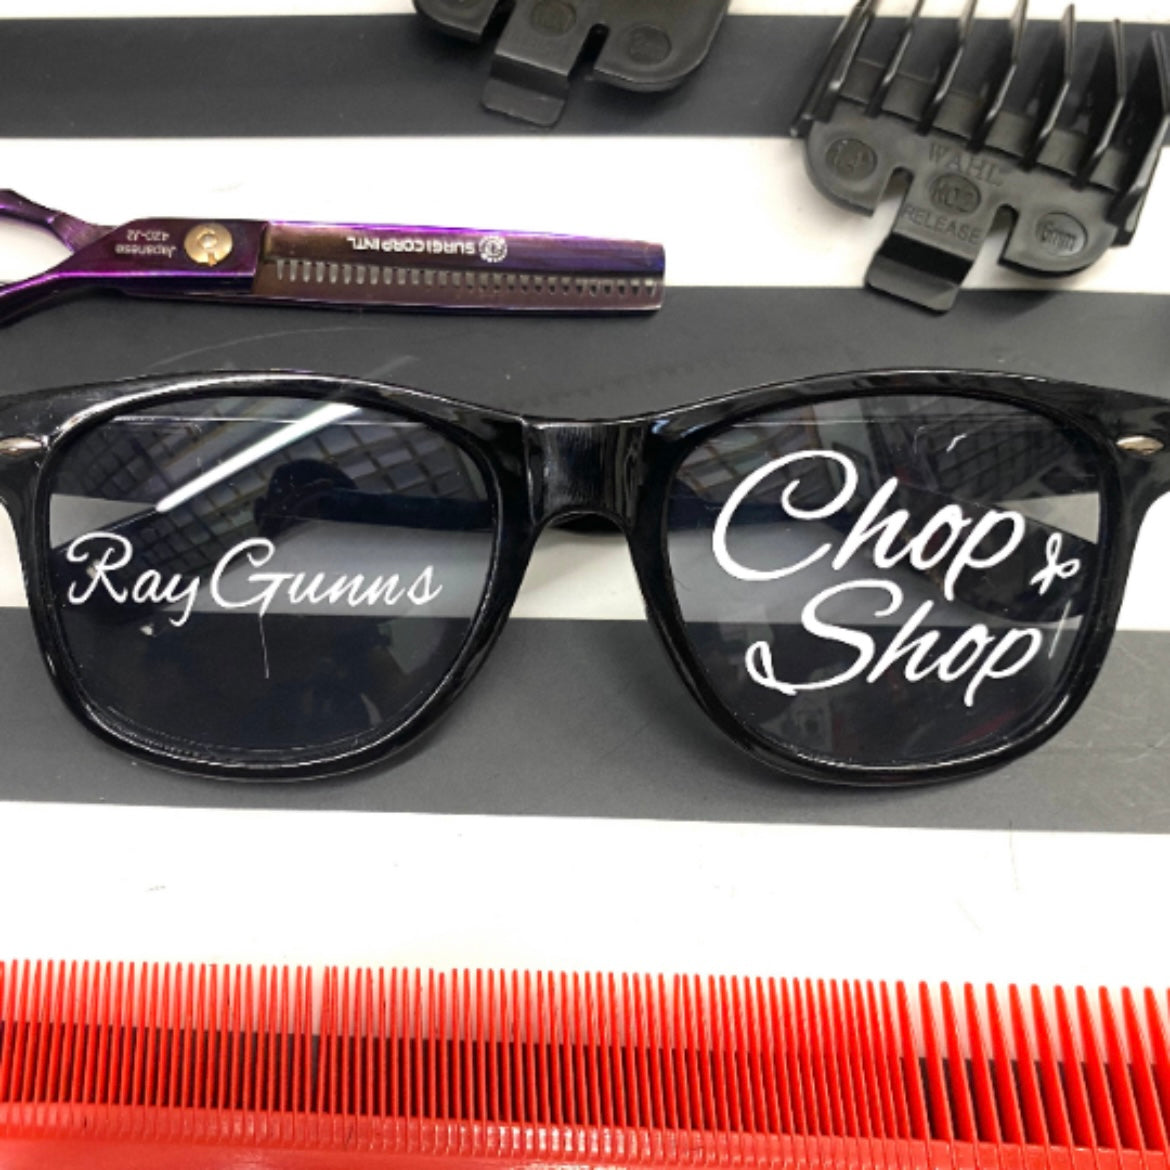 Ray Gunns Chop Shop Sunglasses